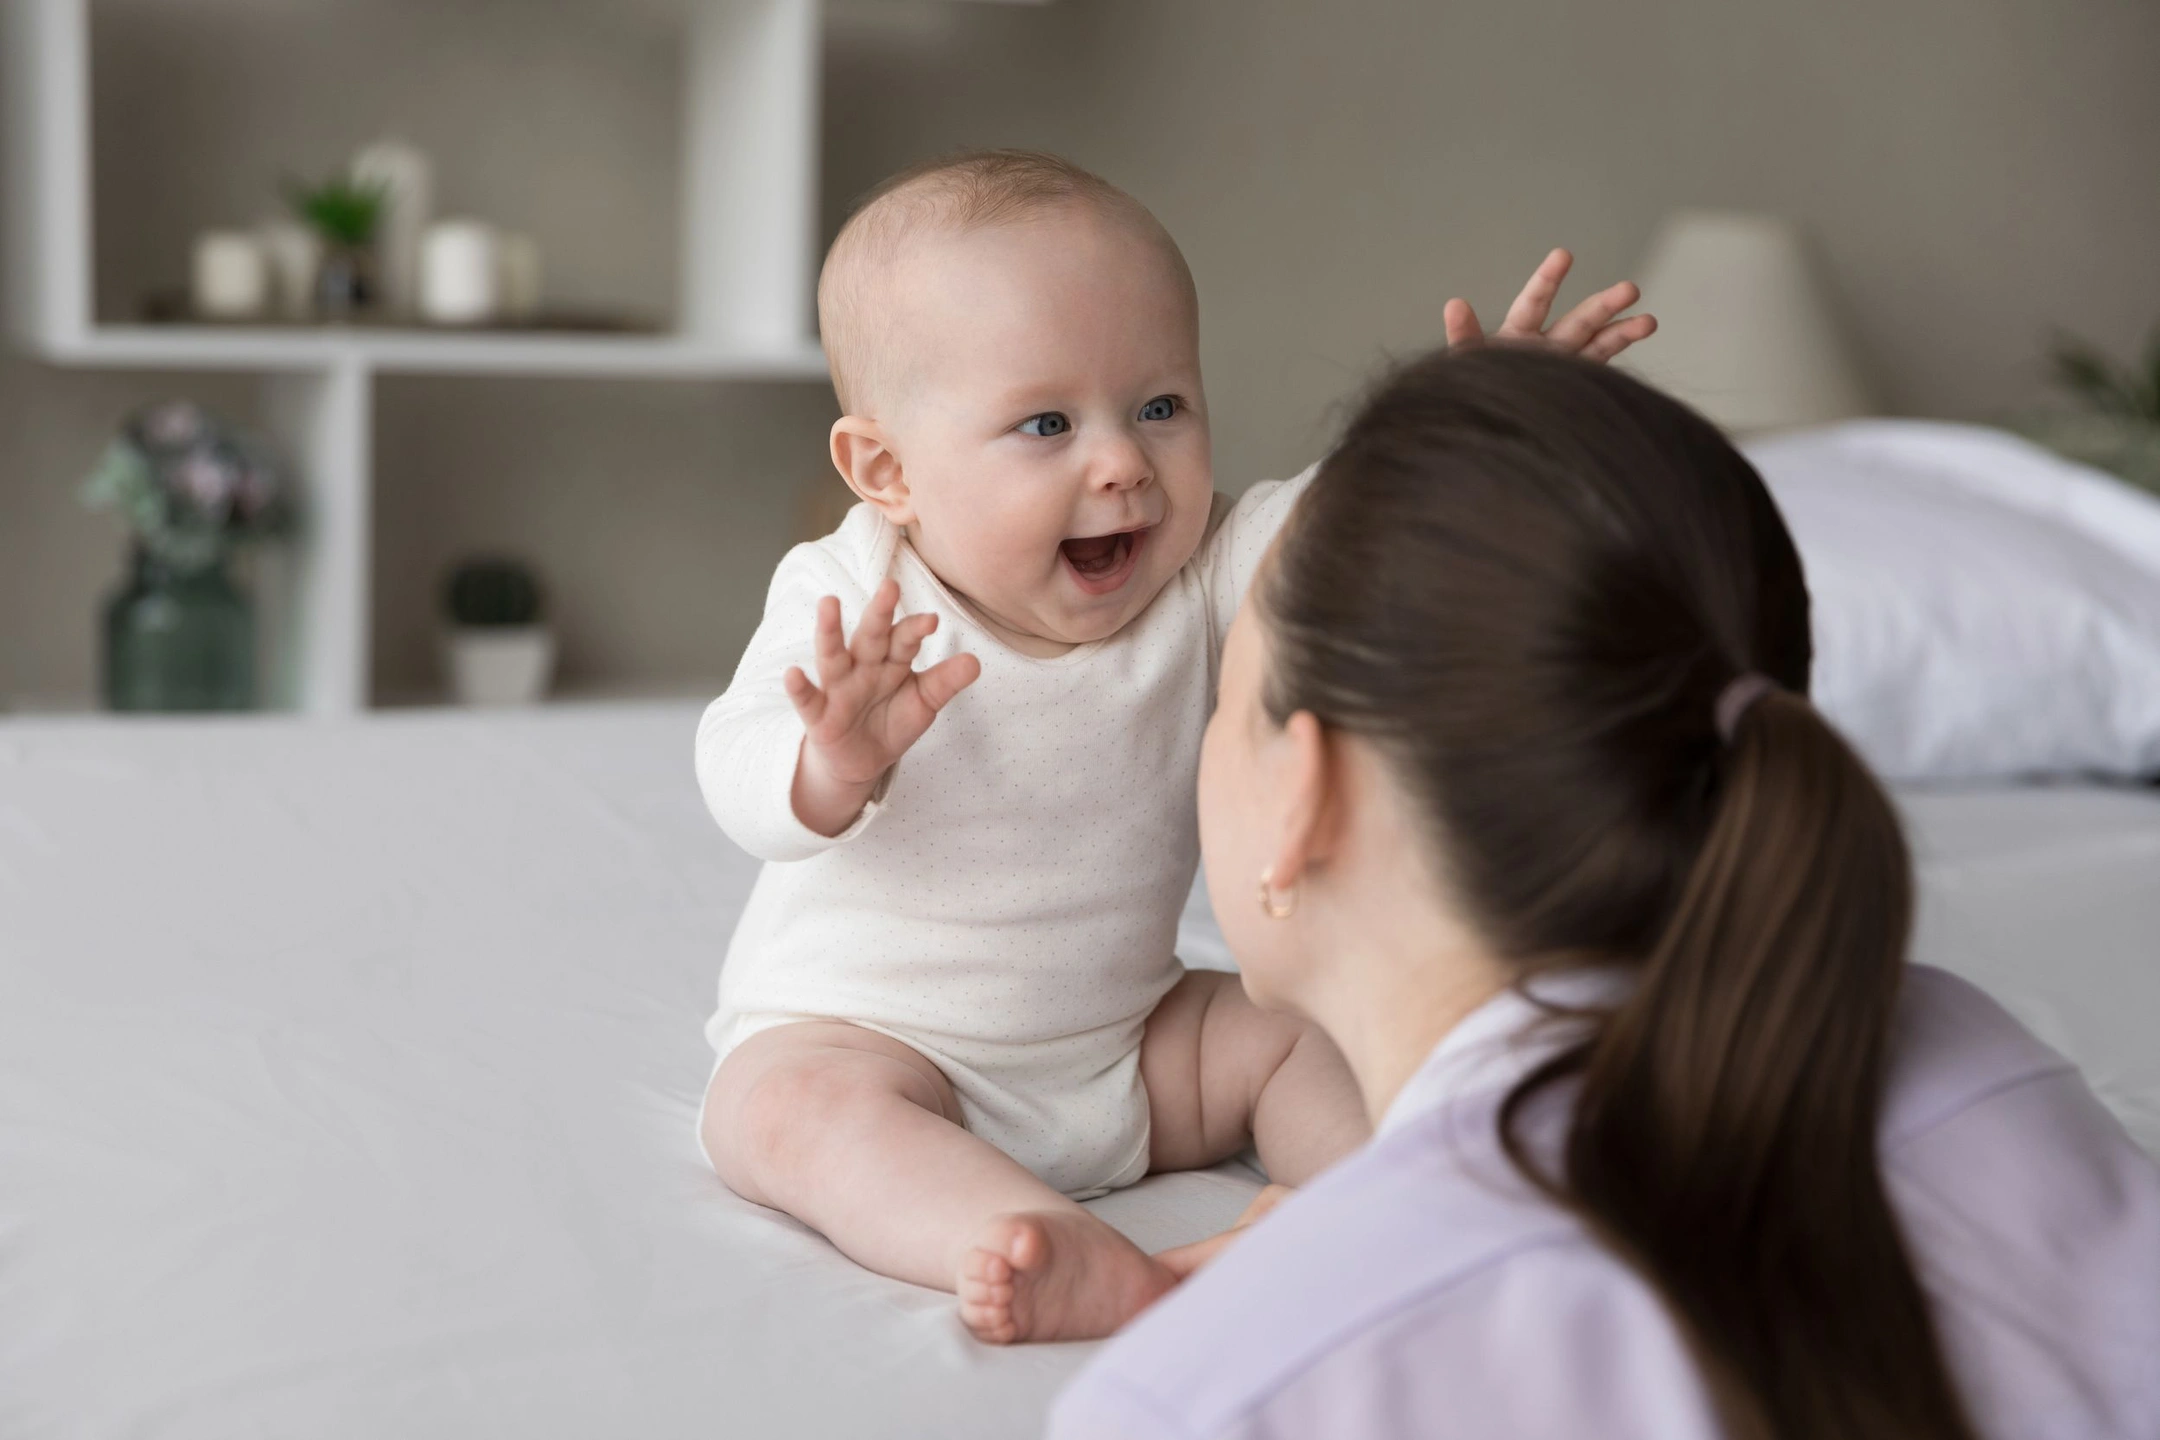 Китайские учёные порекомендовали общаться с младенцем на его «языке»